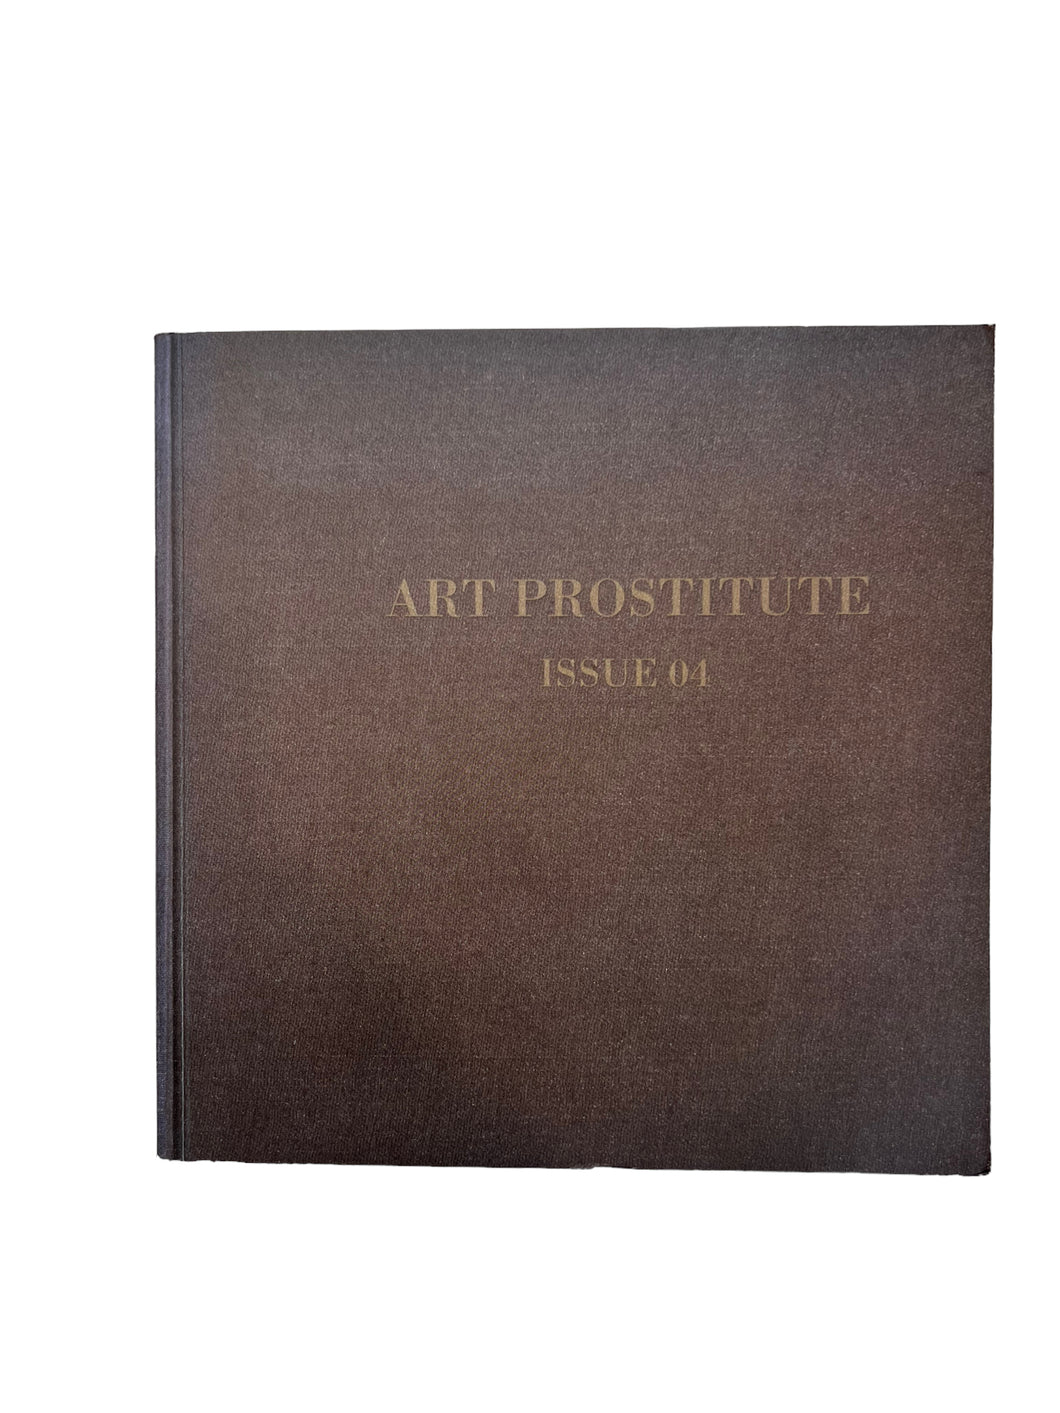 Art Prostitute Issue 04 